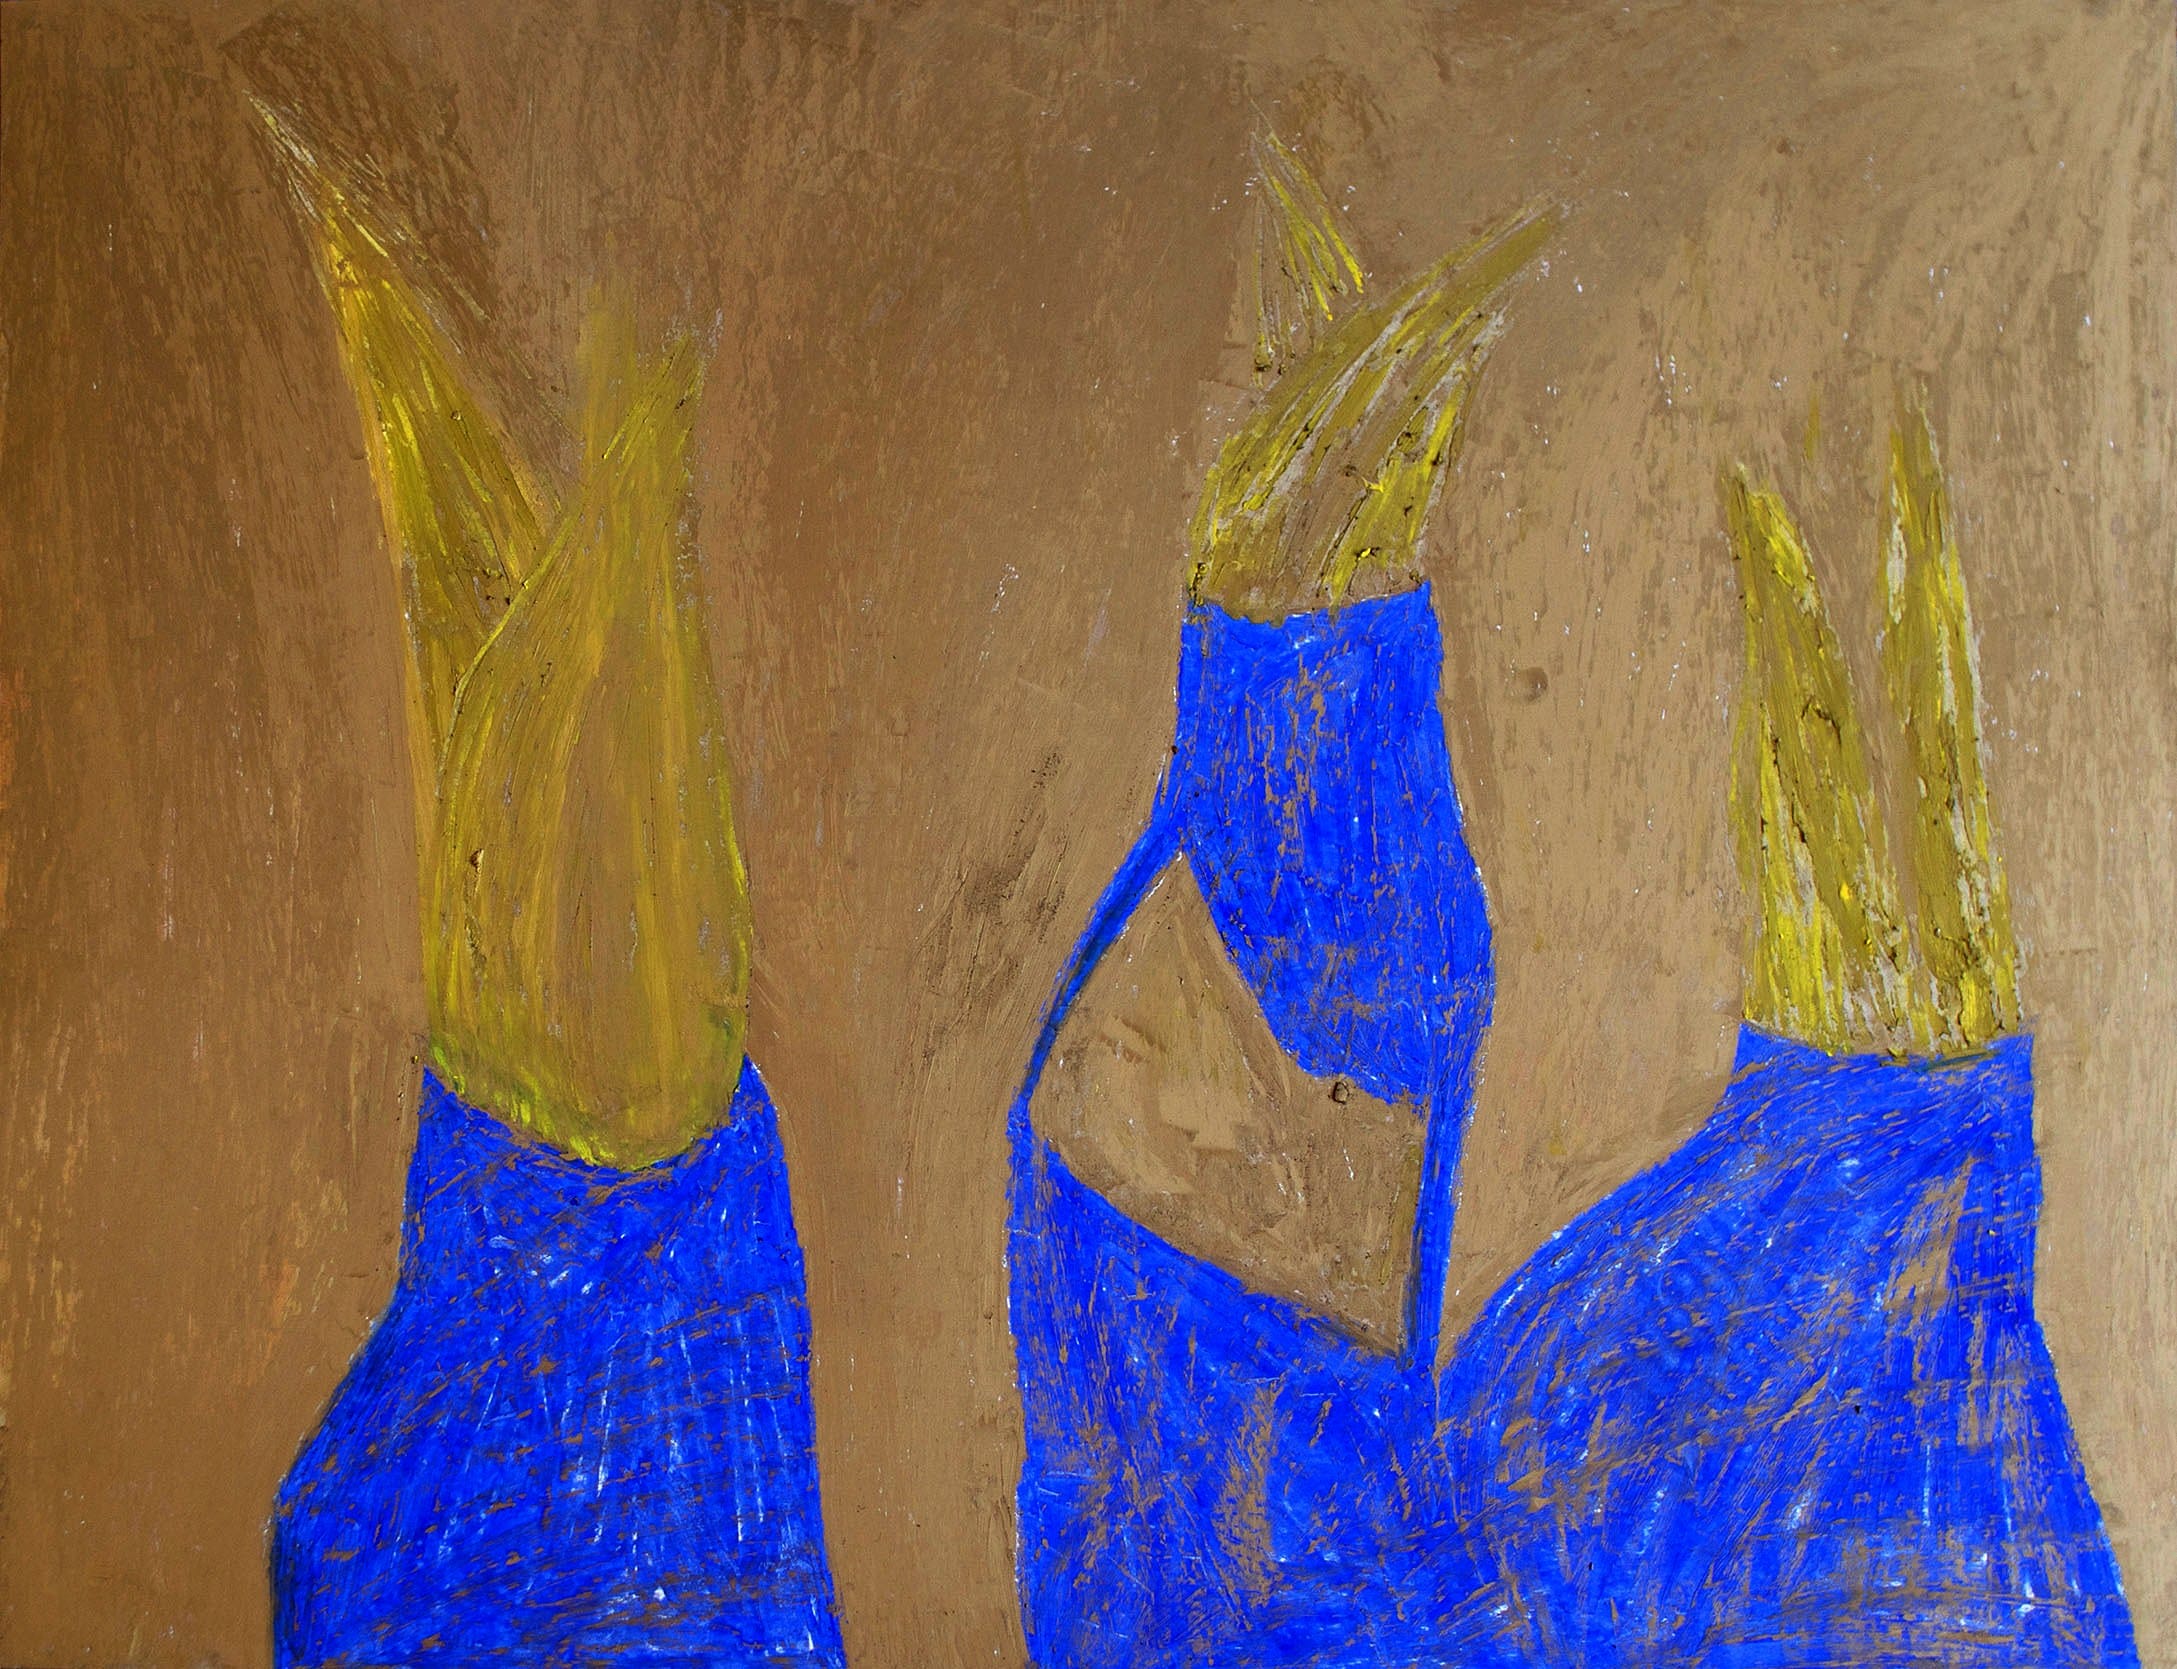 ירון אתר, "להבות", 2015, פסטל על נייר, 48x61 ס"מ